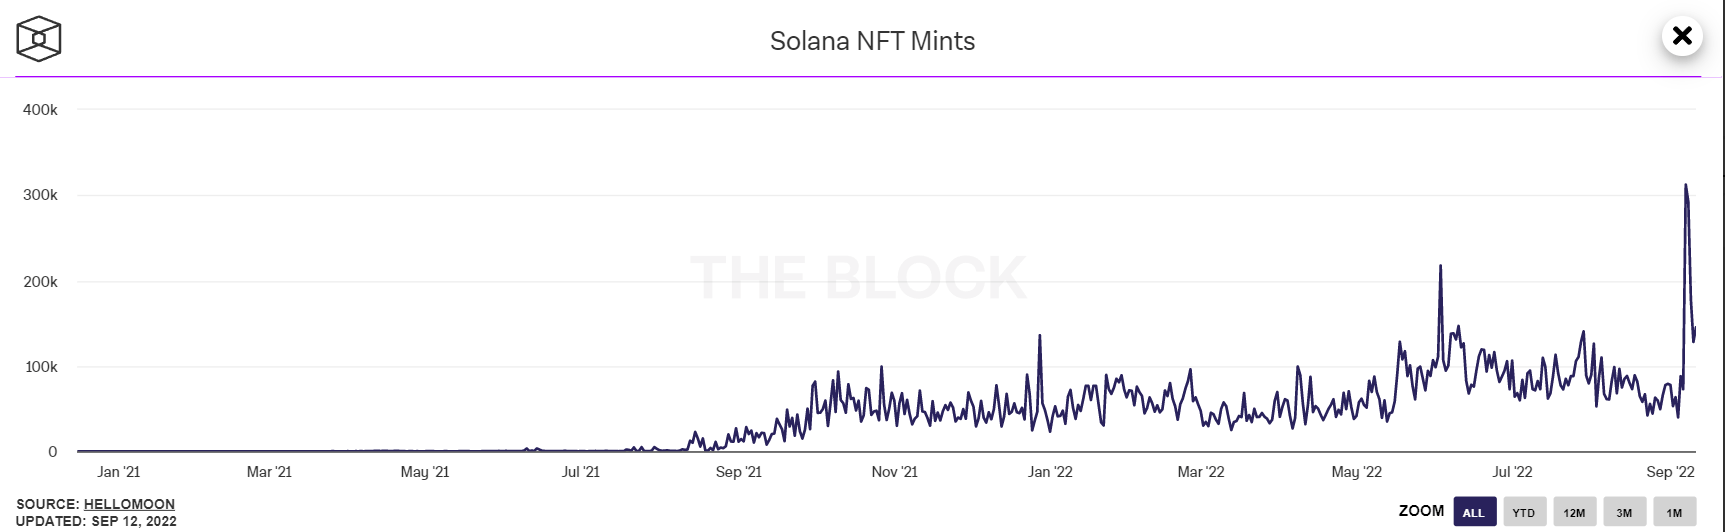 Le samedi 7 septembre, la blockchain Solana a enregistré sa plus grosse performance en terme de NFT mintés à la journée. C’est au total 313 380 mints qui ont été enregistrés.